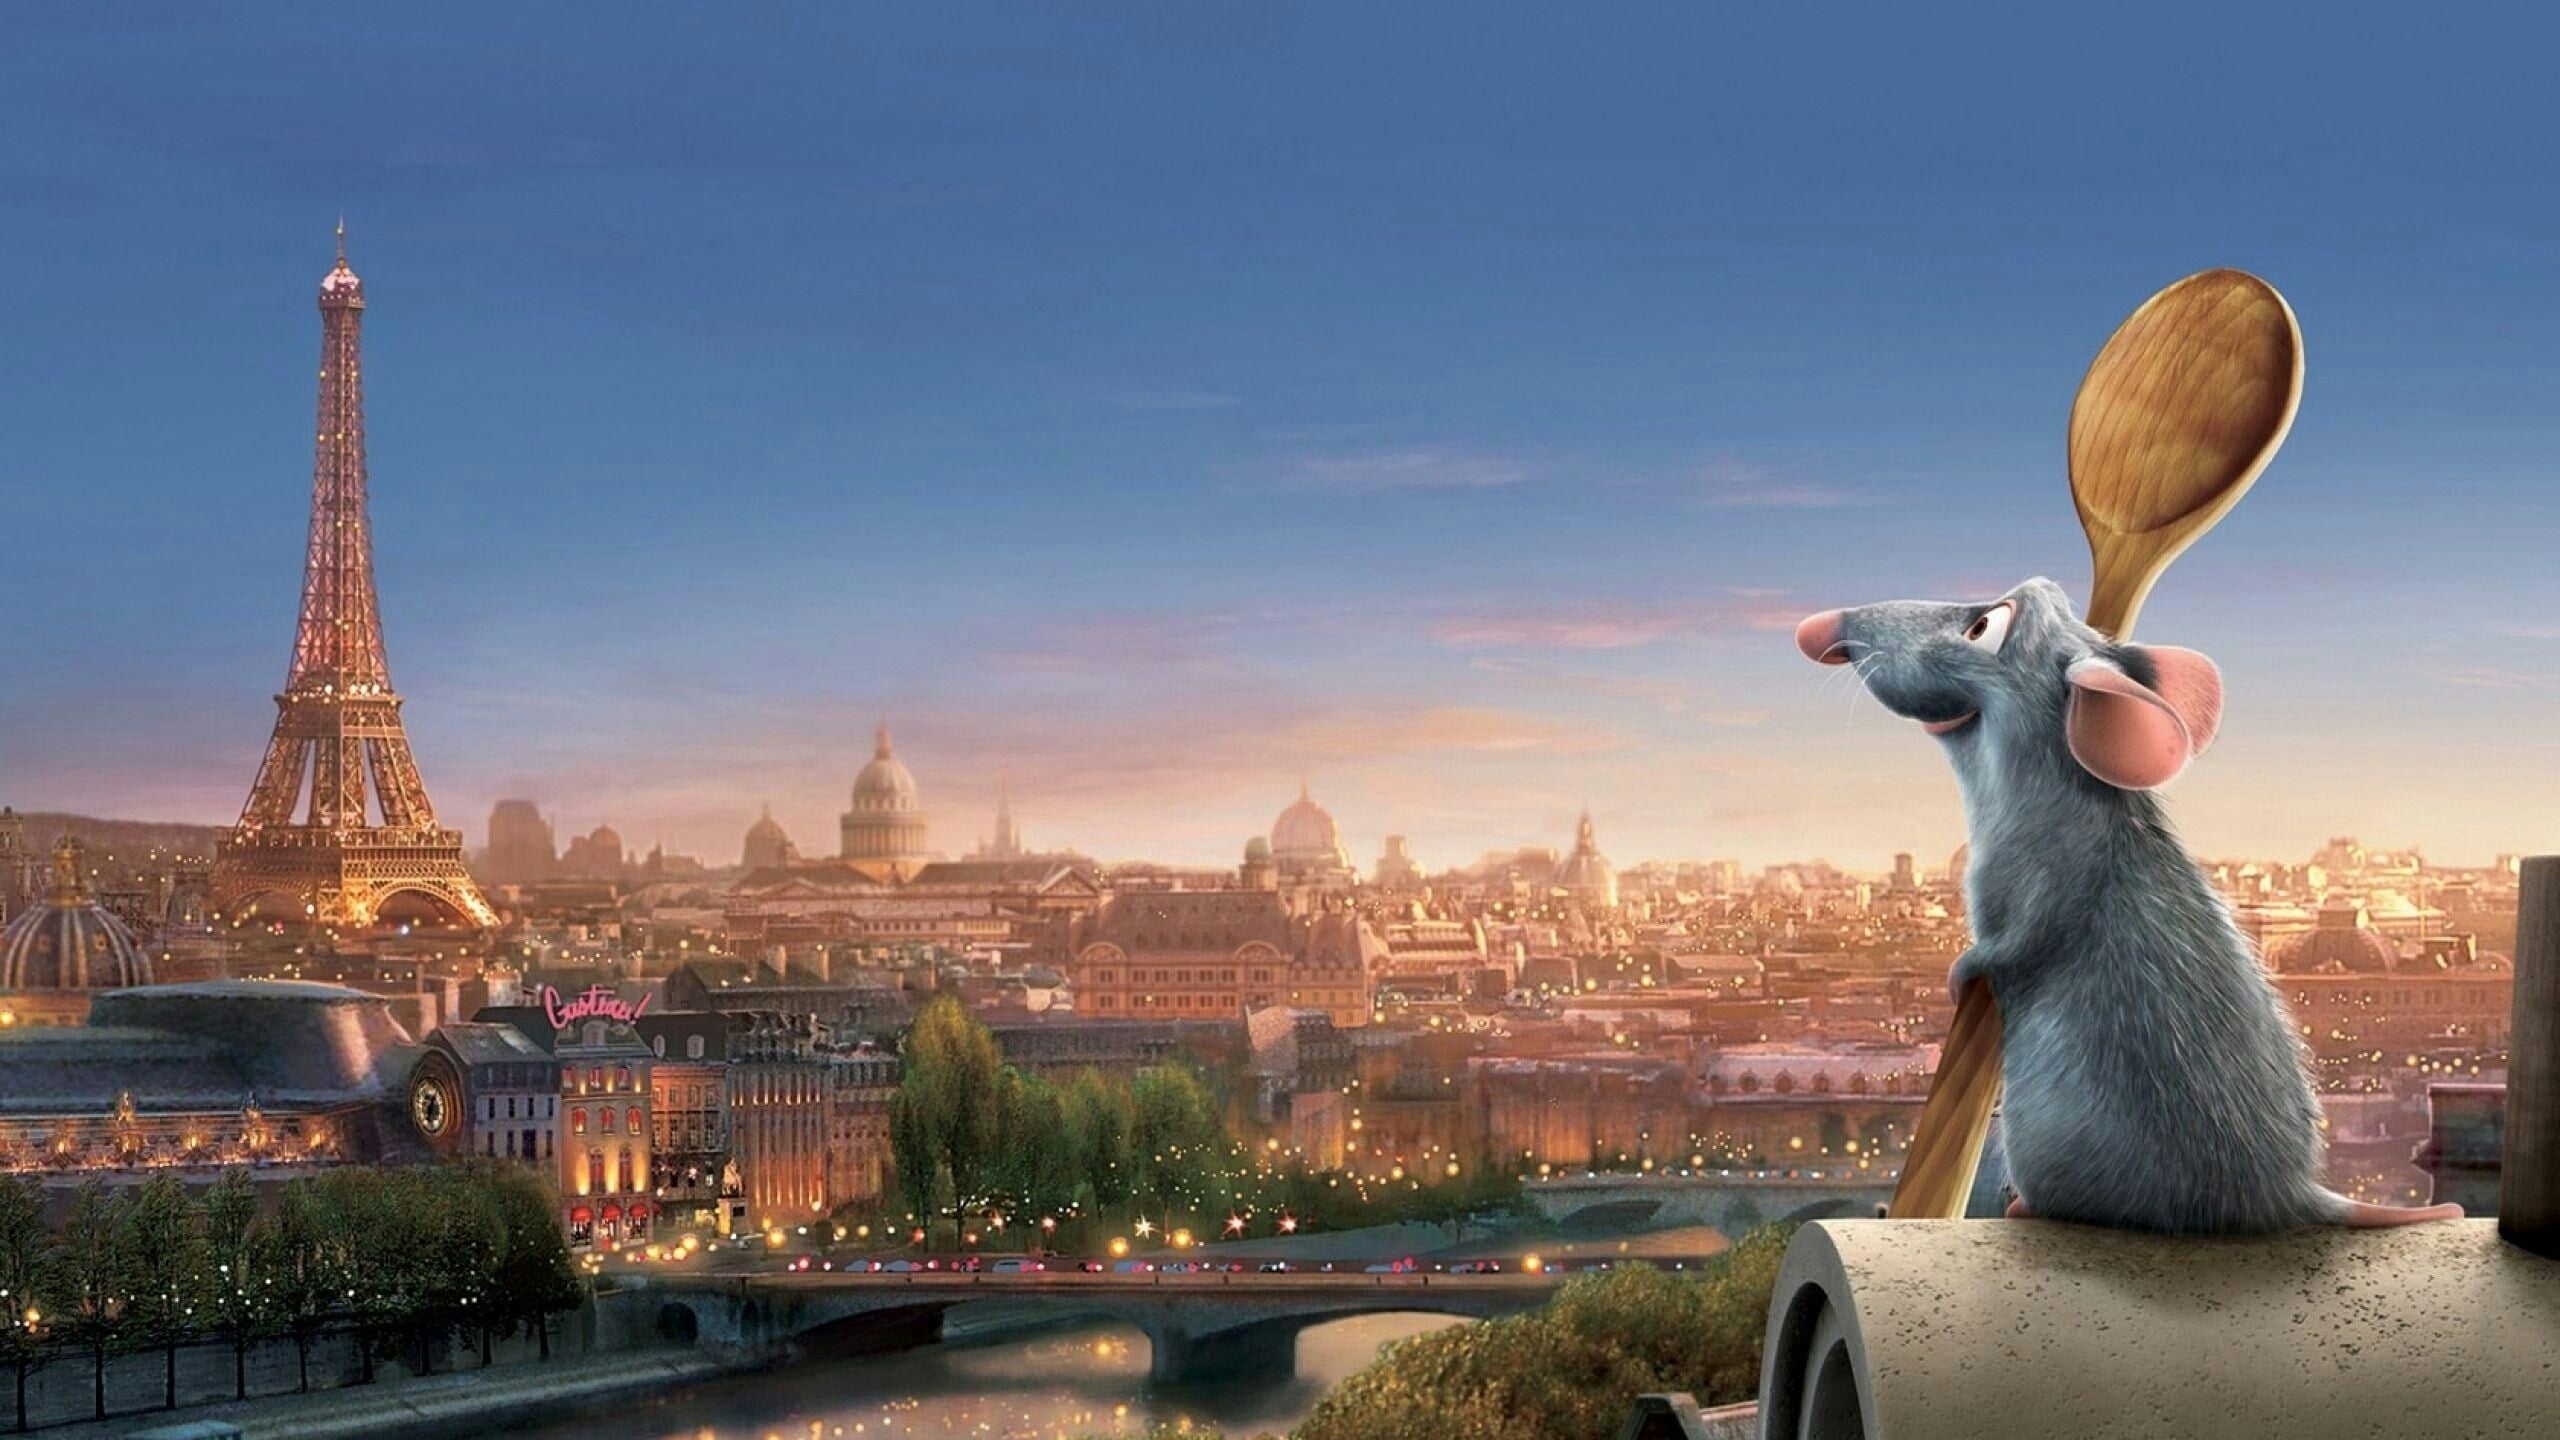 Ratatouille streaming now on Disney+.